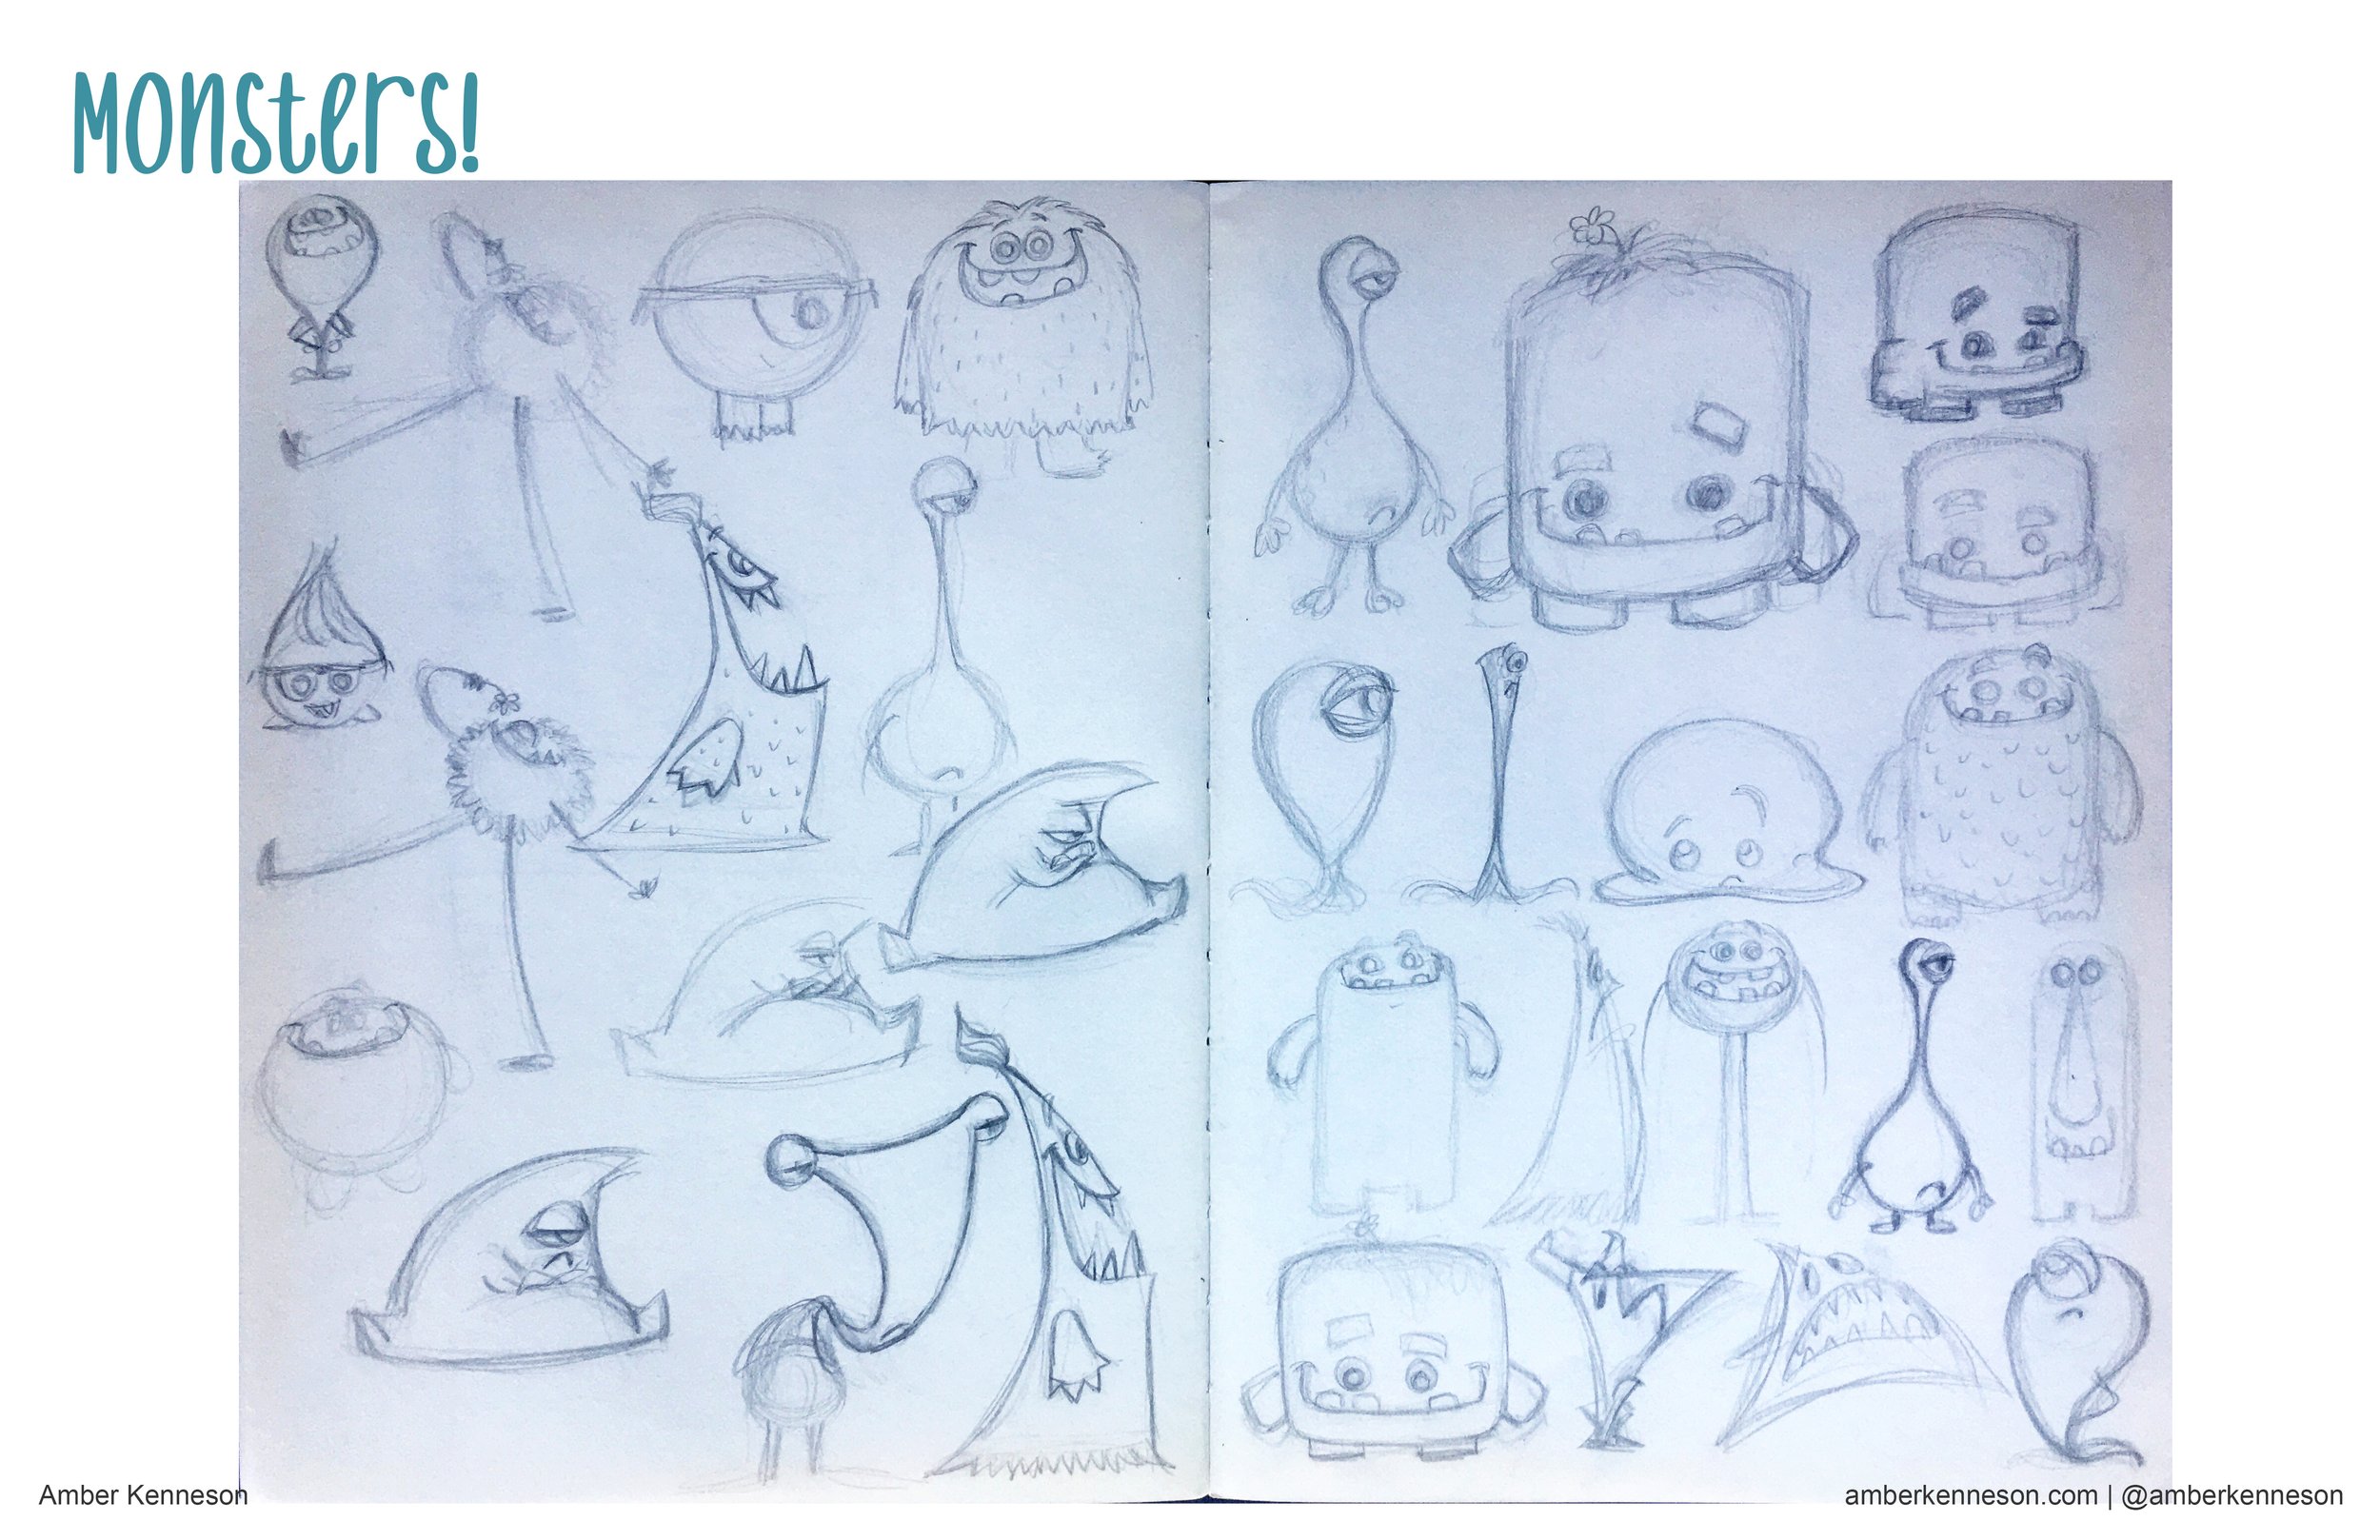 Monsters-PORTFOLIOpages-sketchbook.jpg